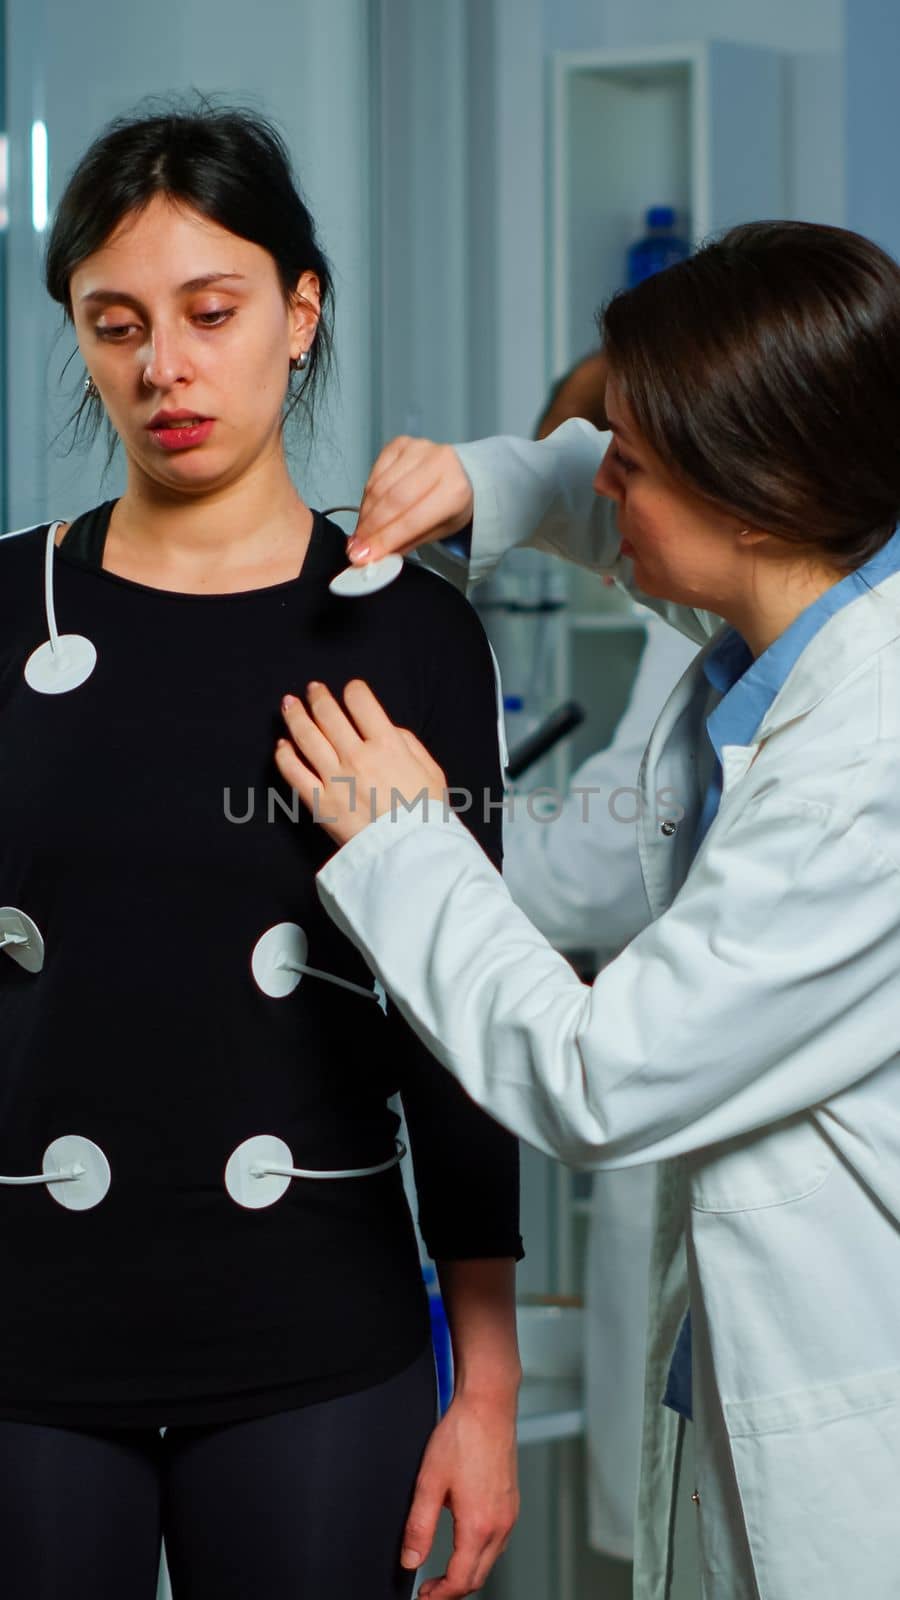 Scientist researcher preparing woman patient for endurance test by DCStudio